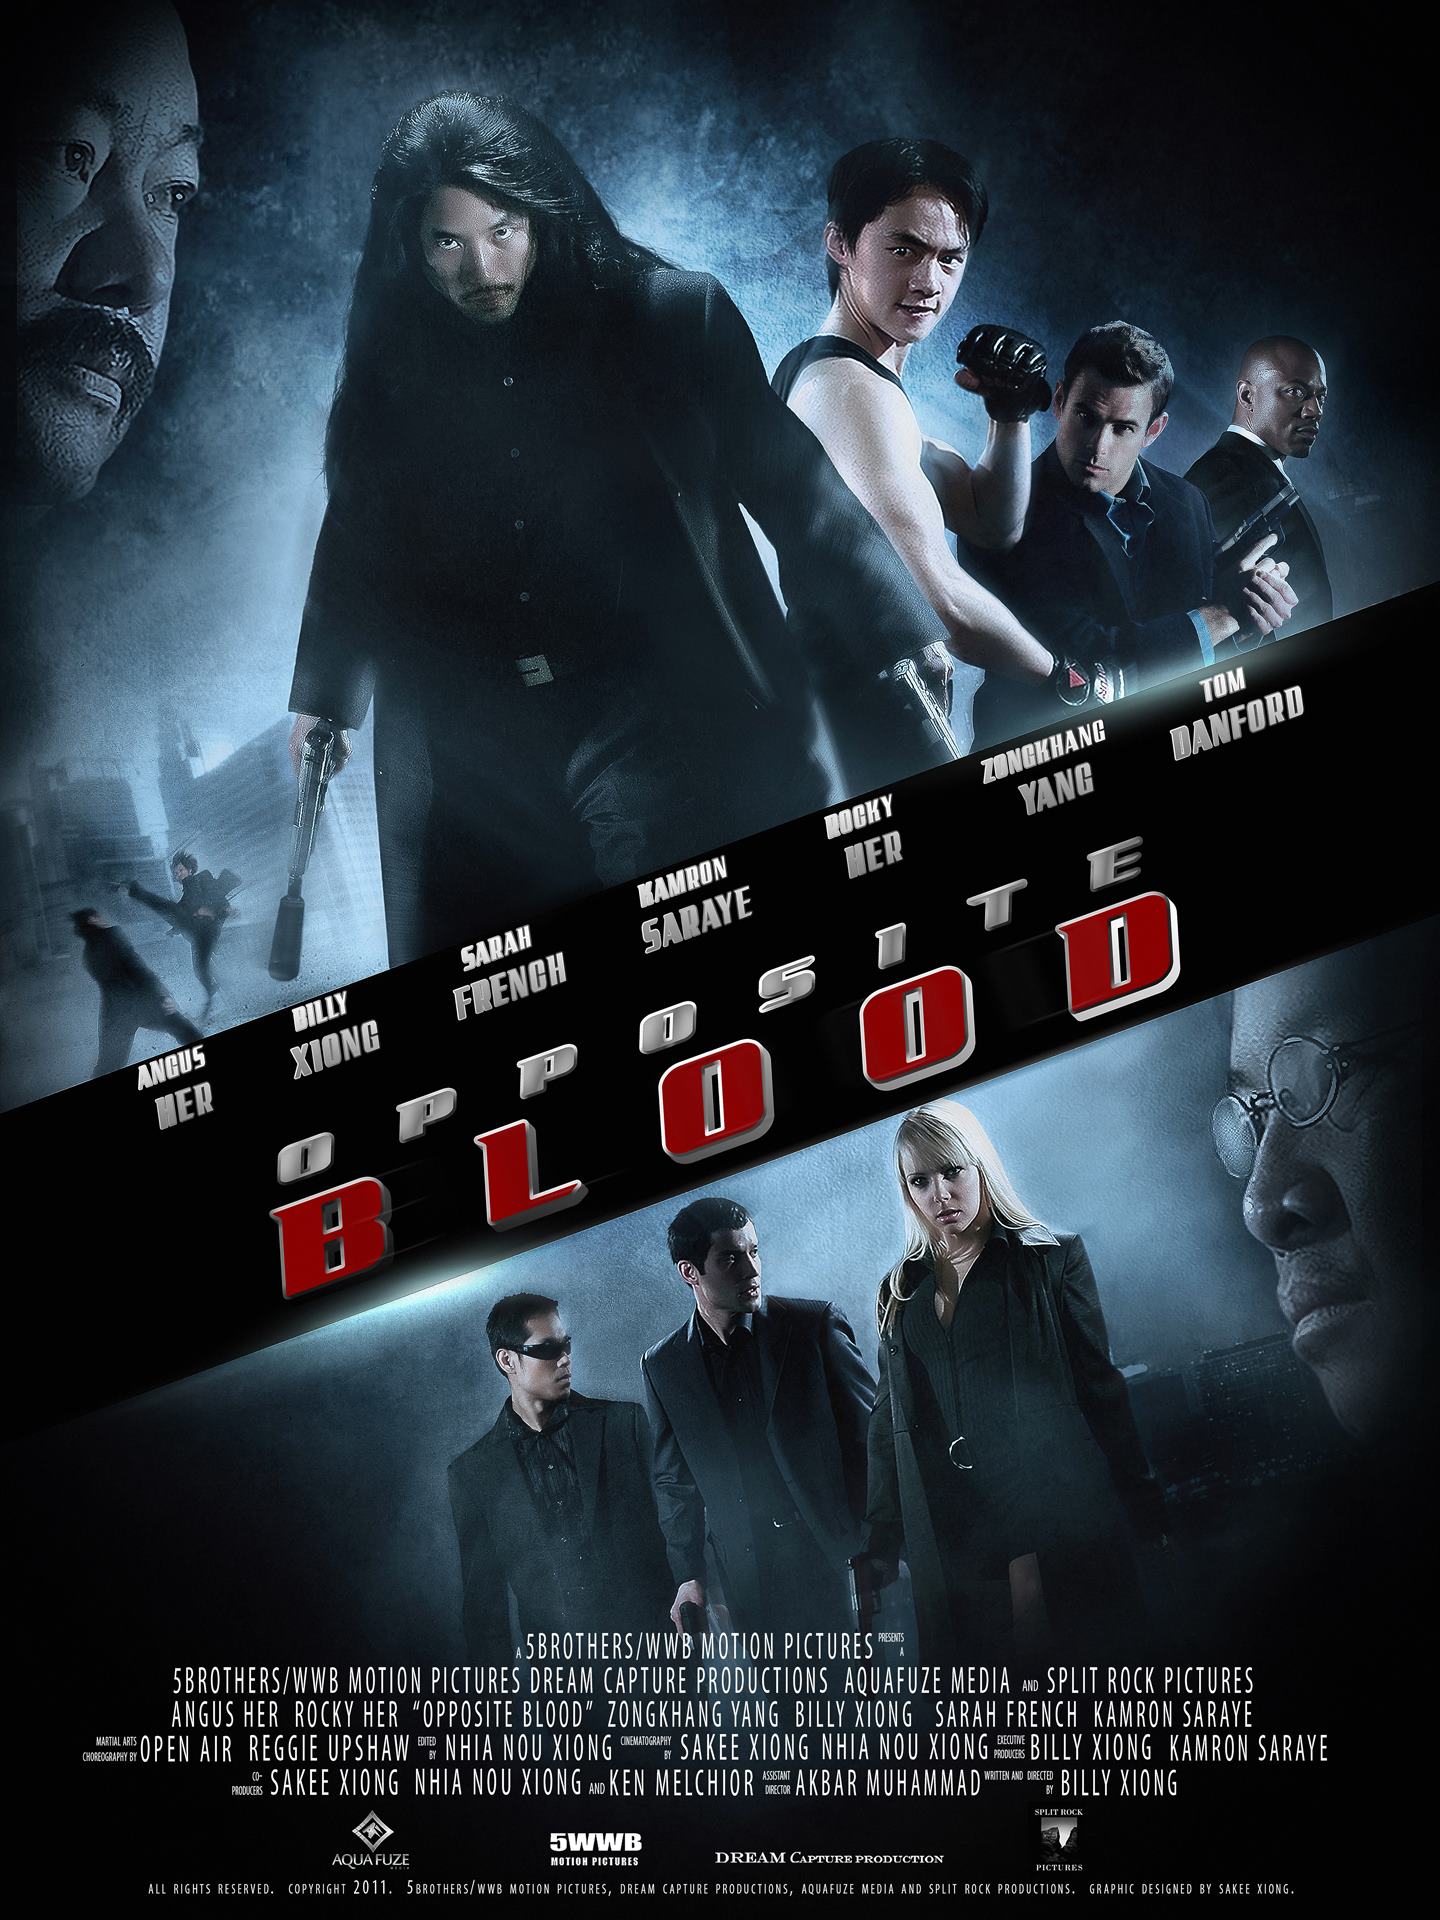 Opposite Blood teaser poster